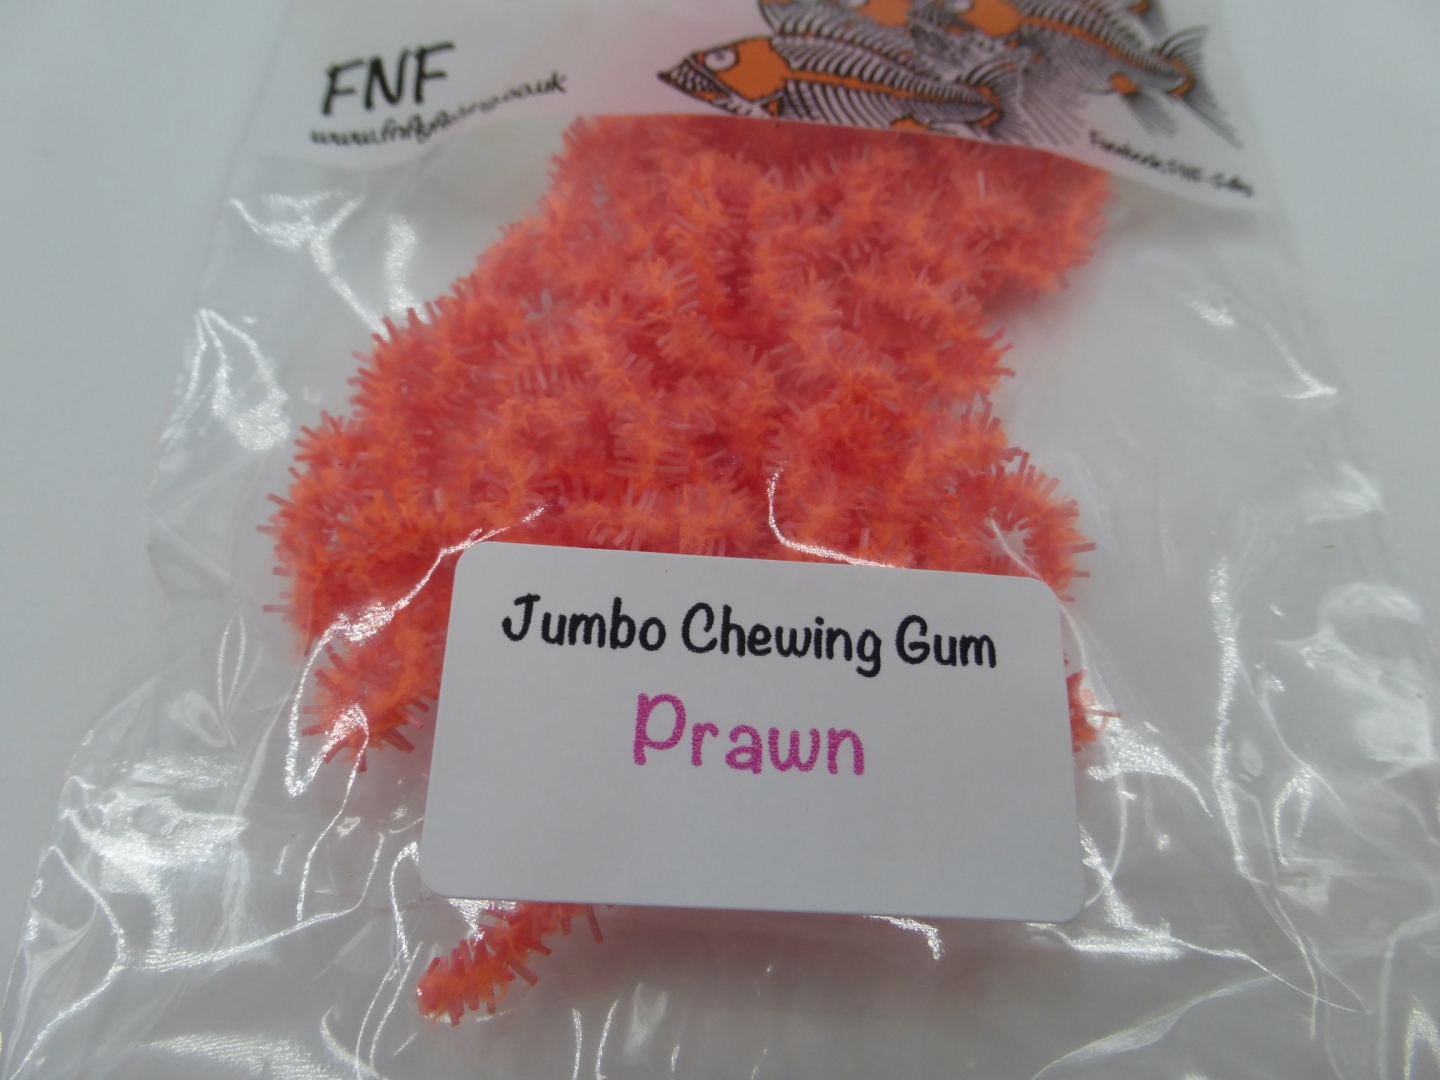 FNF Jumbo Chewing Gum - Prawn